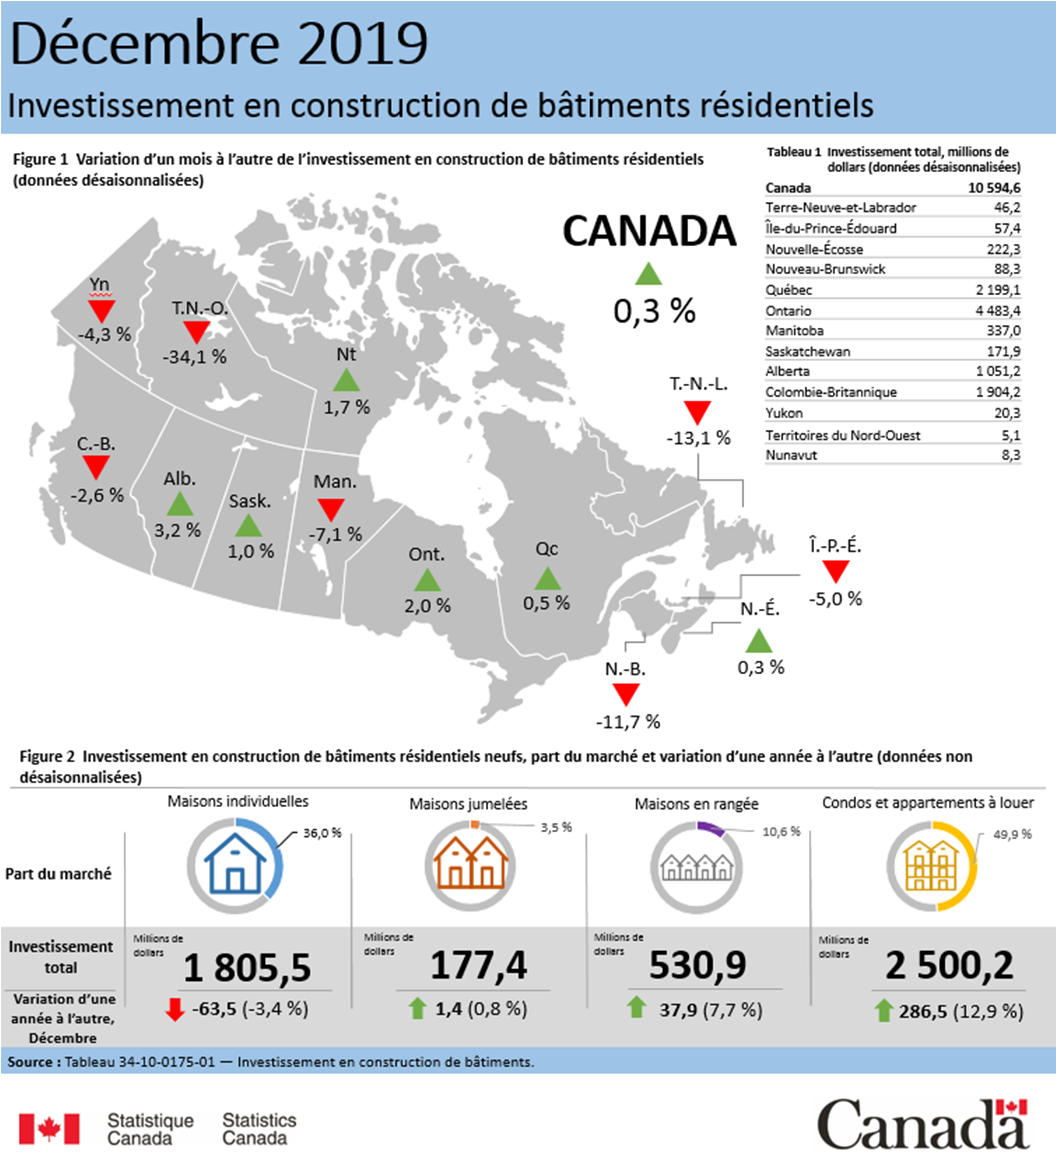 Vignette de l'infographie 1: Investissement en construction de bâtiments résidentiels, décembre 2019